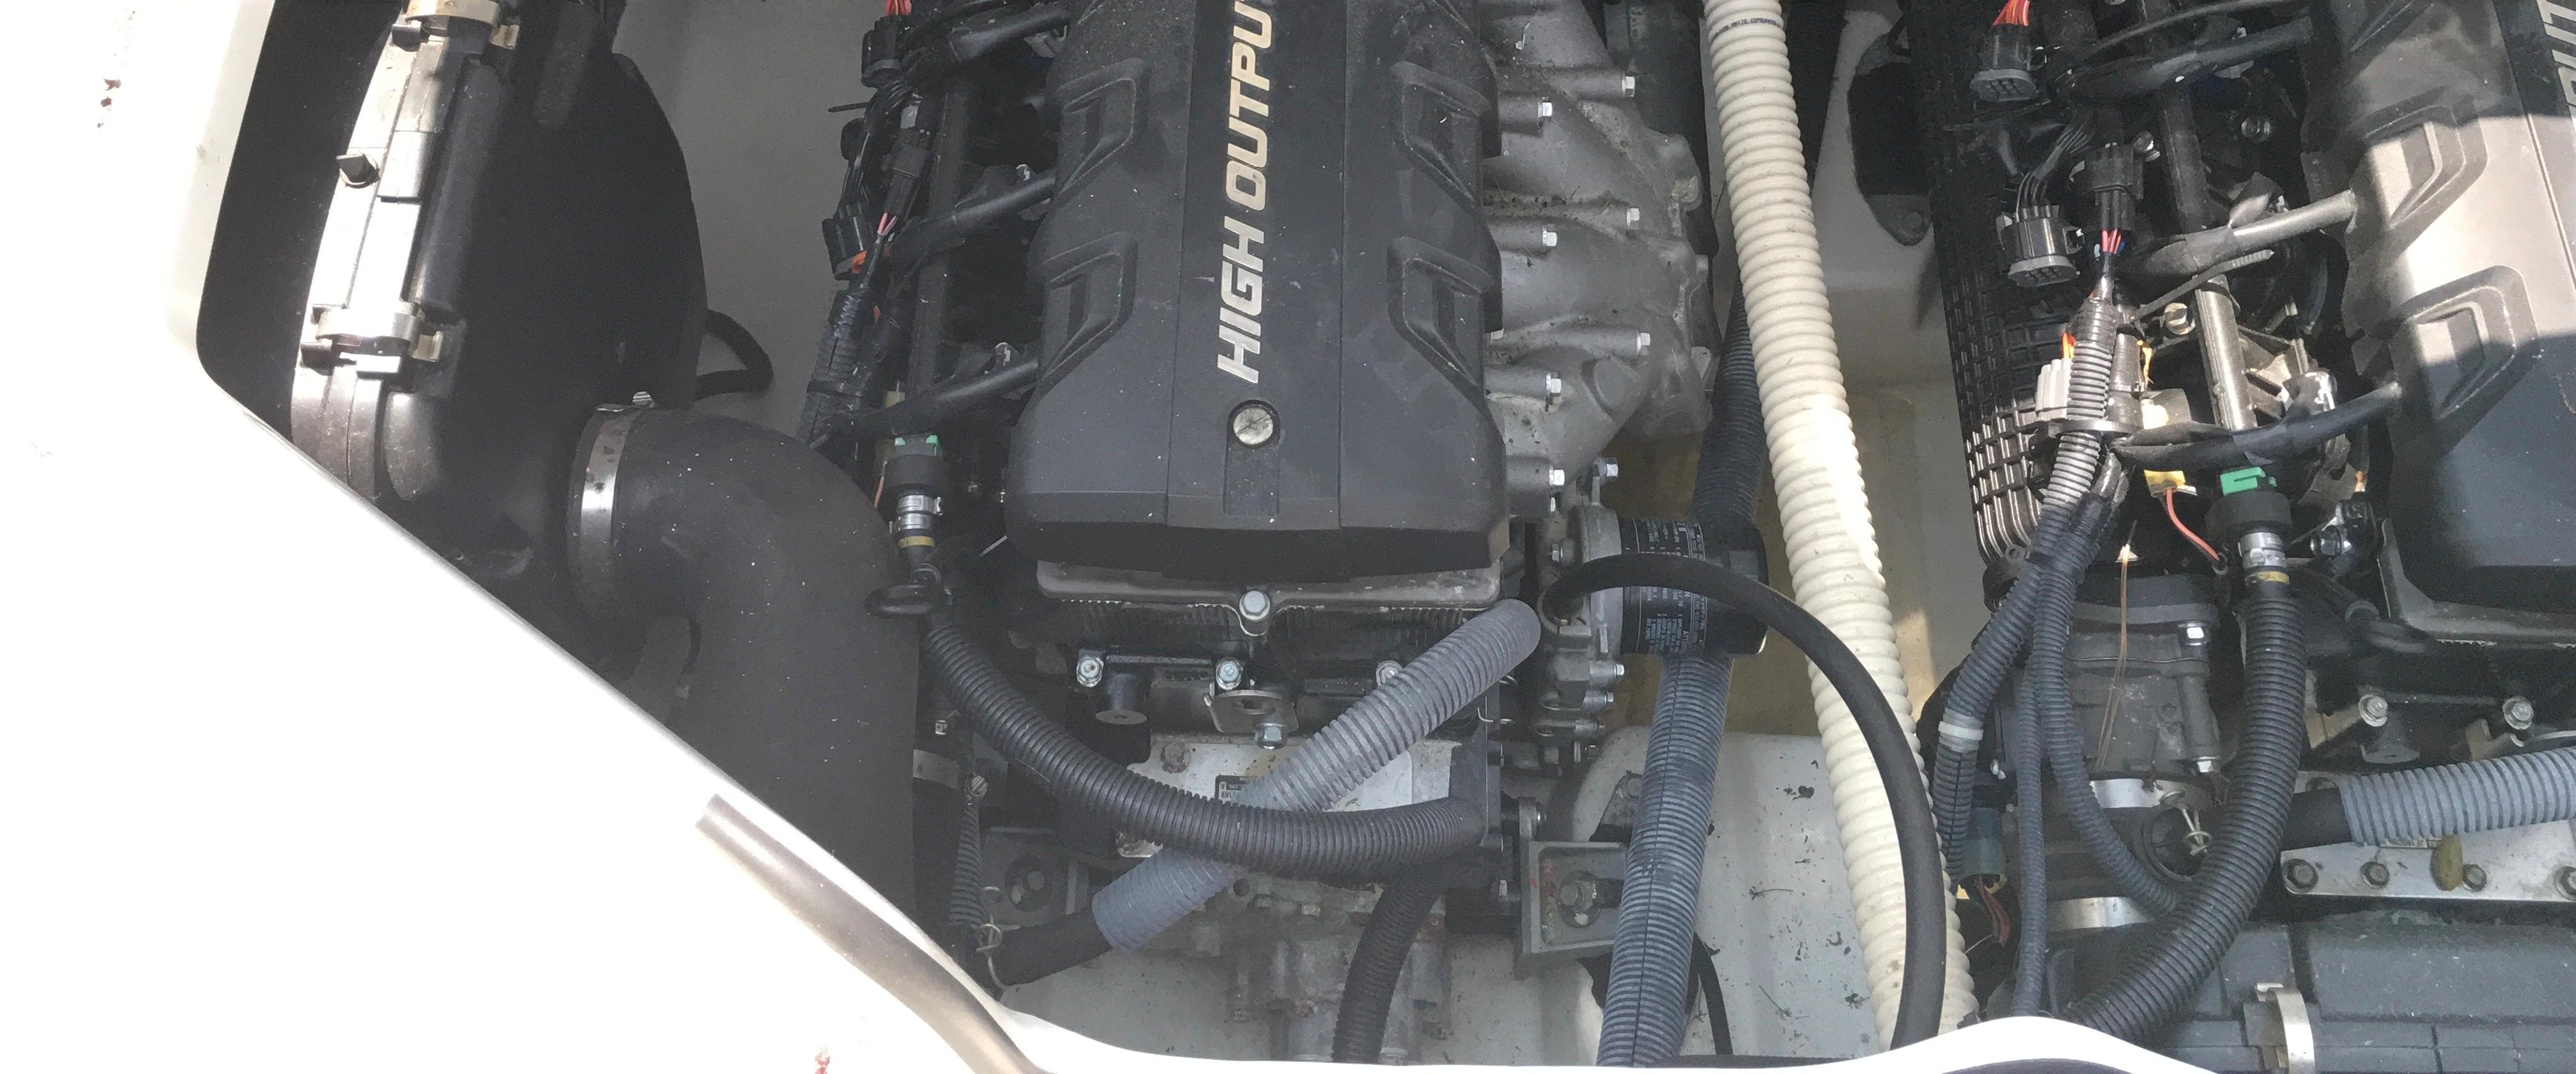 2014 Yamaha Boats AR240 High Output